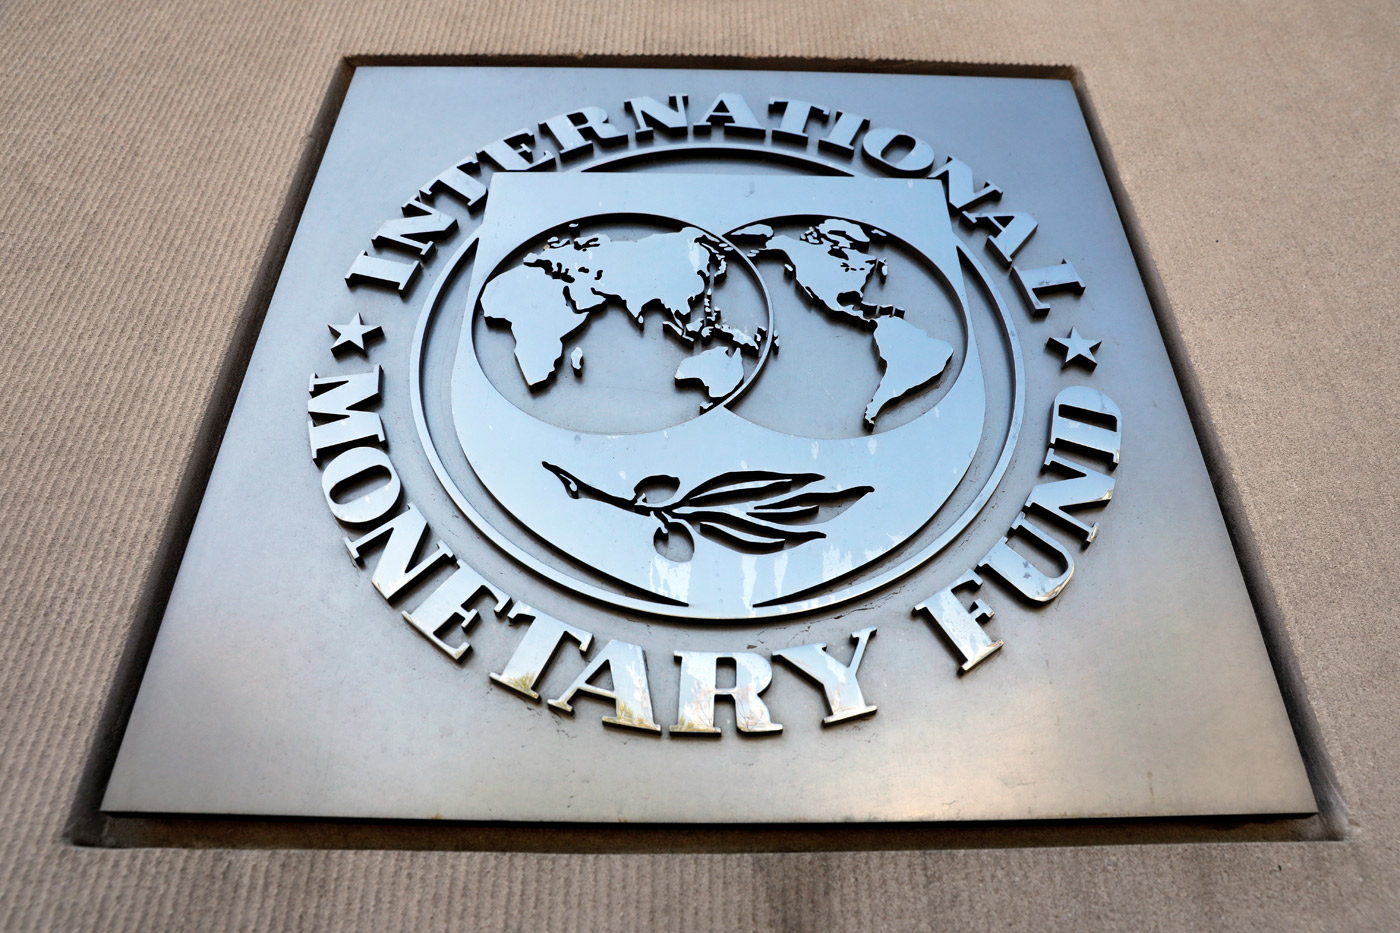 El FMI cree que la eurozona está en una encrucijada que exige apoyo político